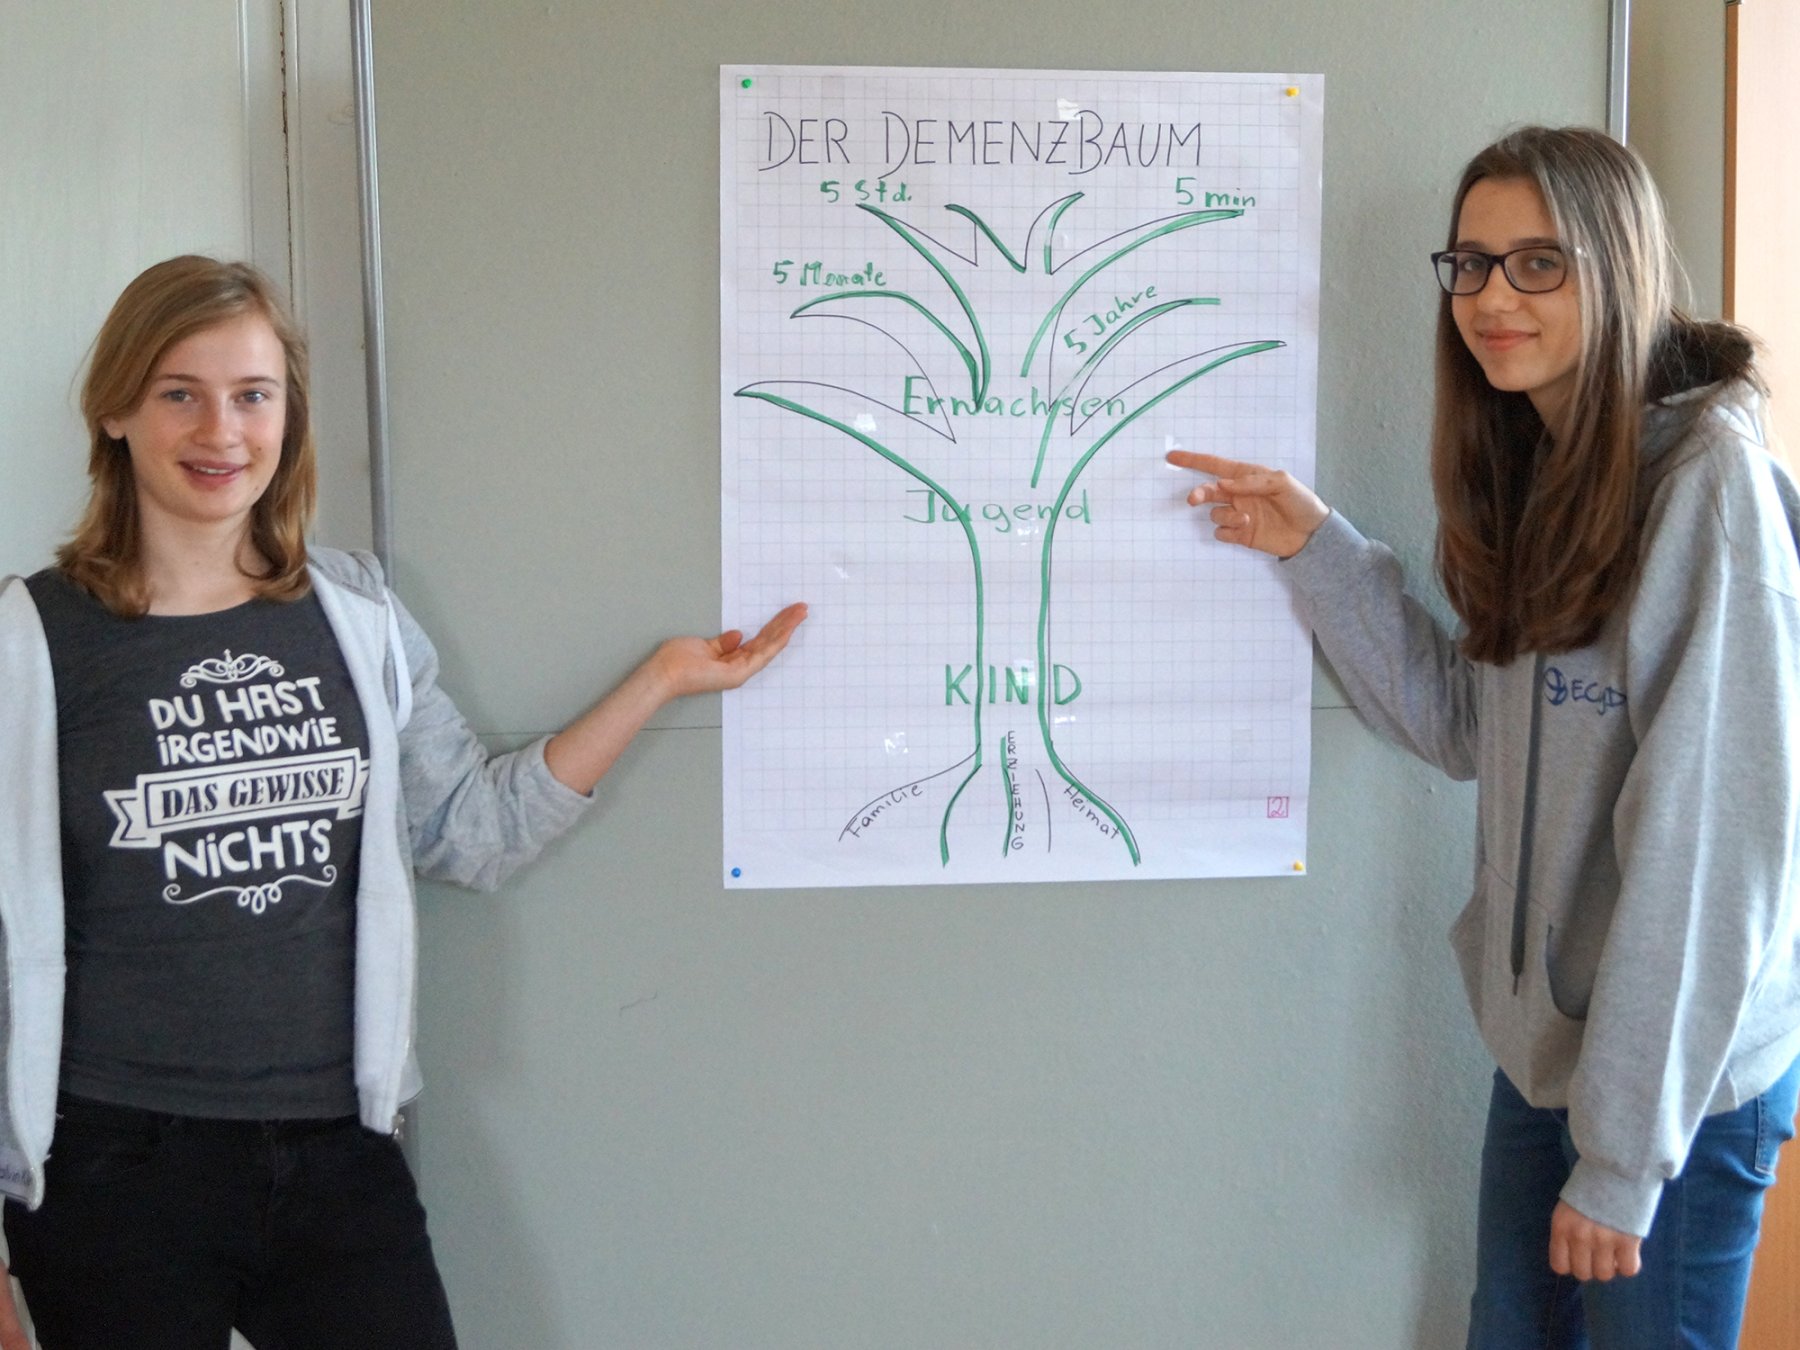 Zwei Schülerinnen präsentieren ein Plakat mit einem Demenzbaum